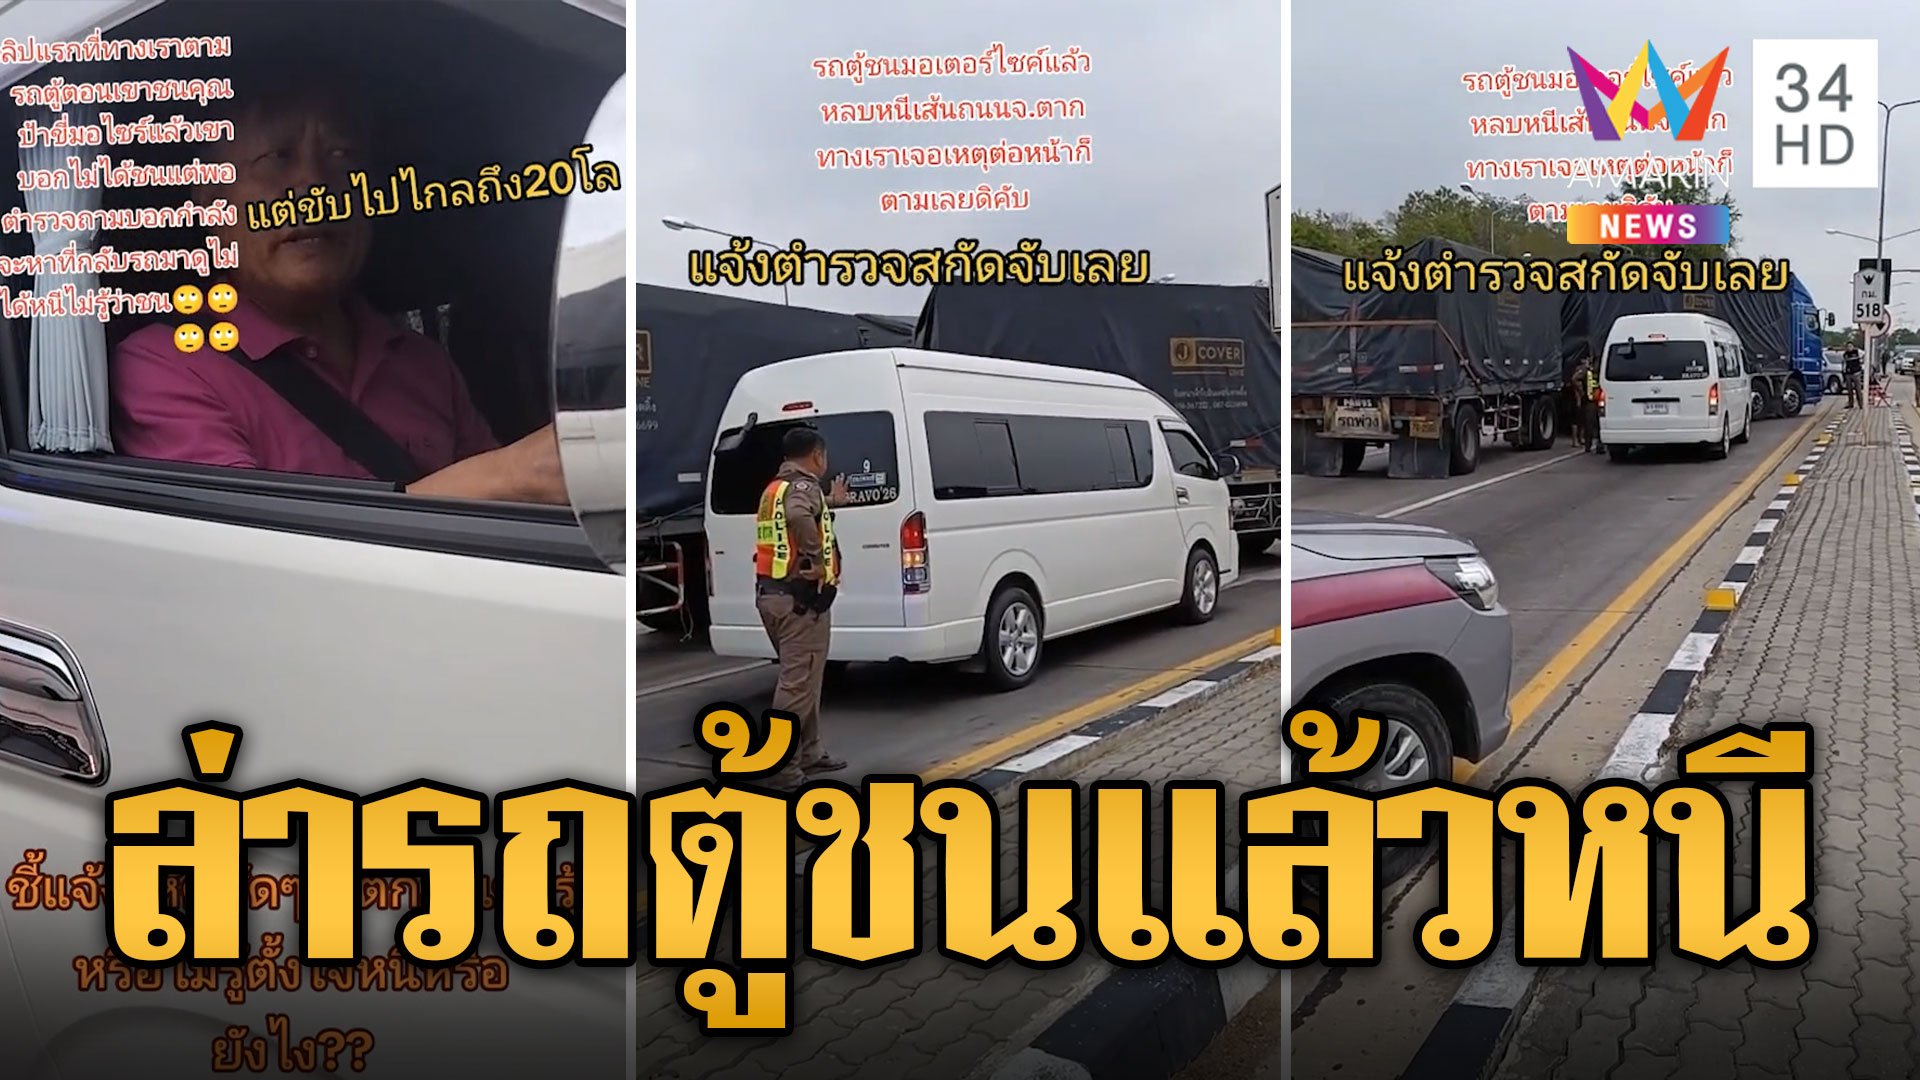 ระทึก! พลเมืองดีช่วยไล่จับรถตู้ชนแล้วหนี | ข่าวเที่ยงอมรินทร์ | 12 พ.ค. 67 | AMARIN TVHD34